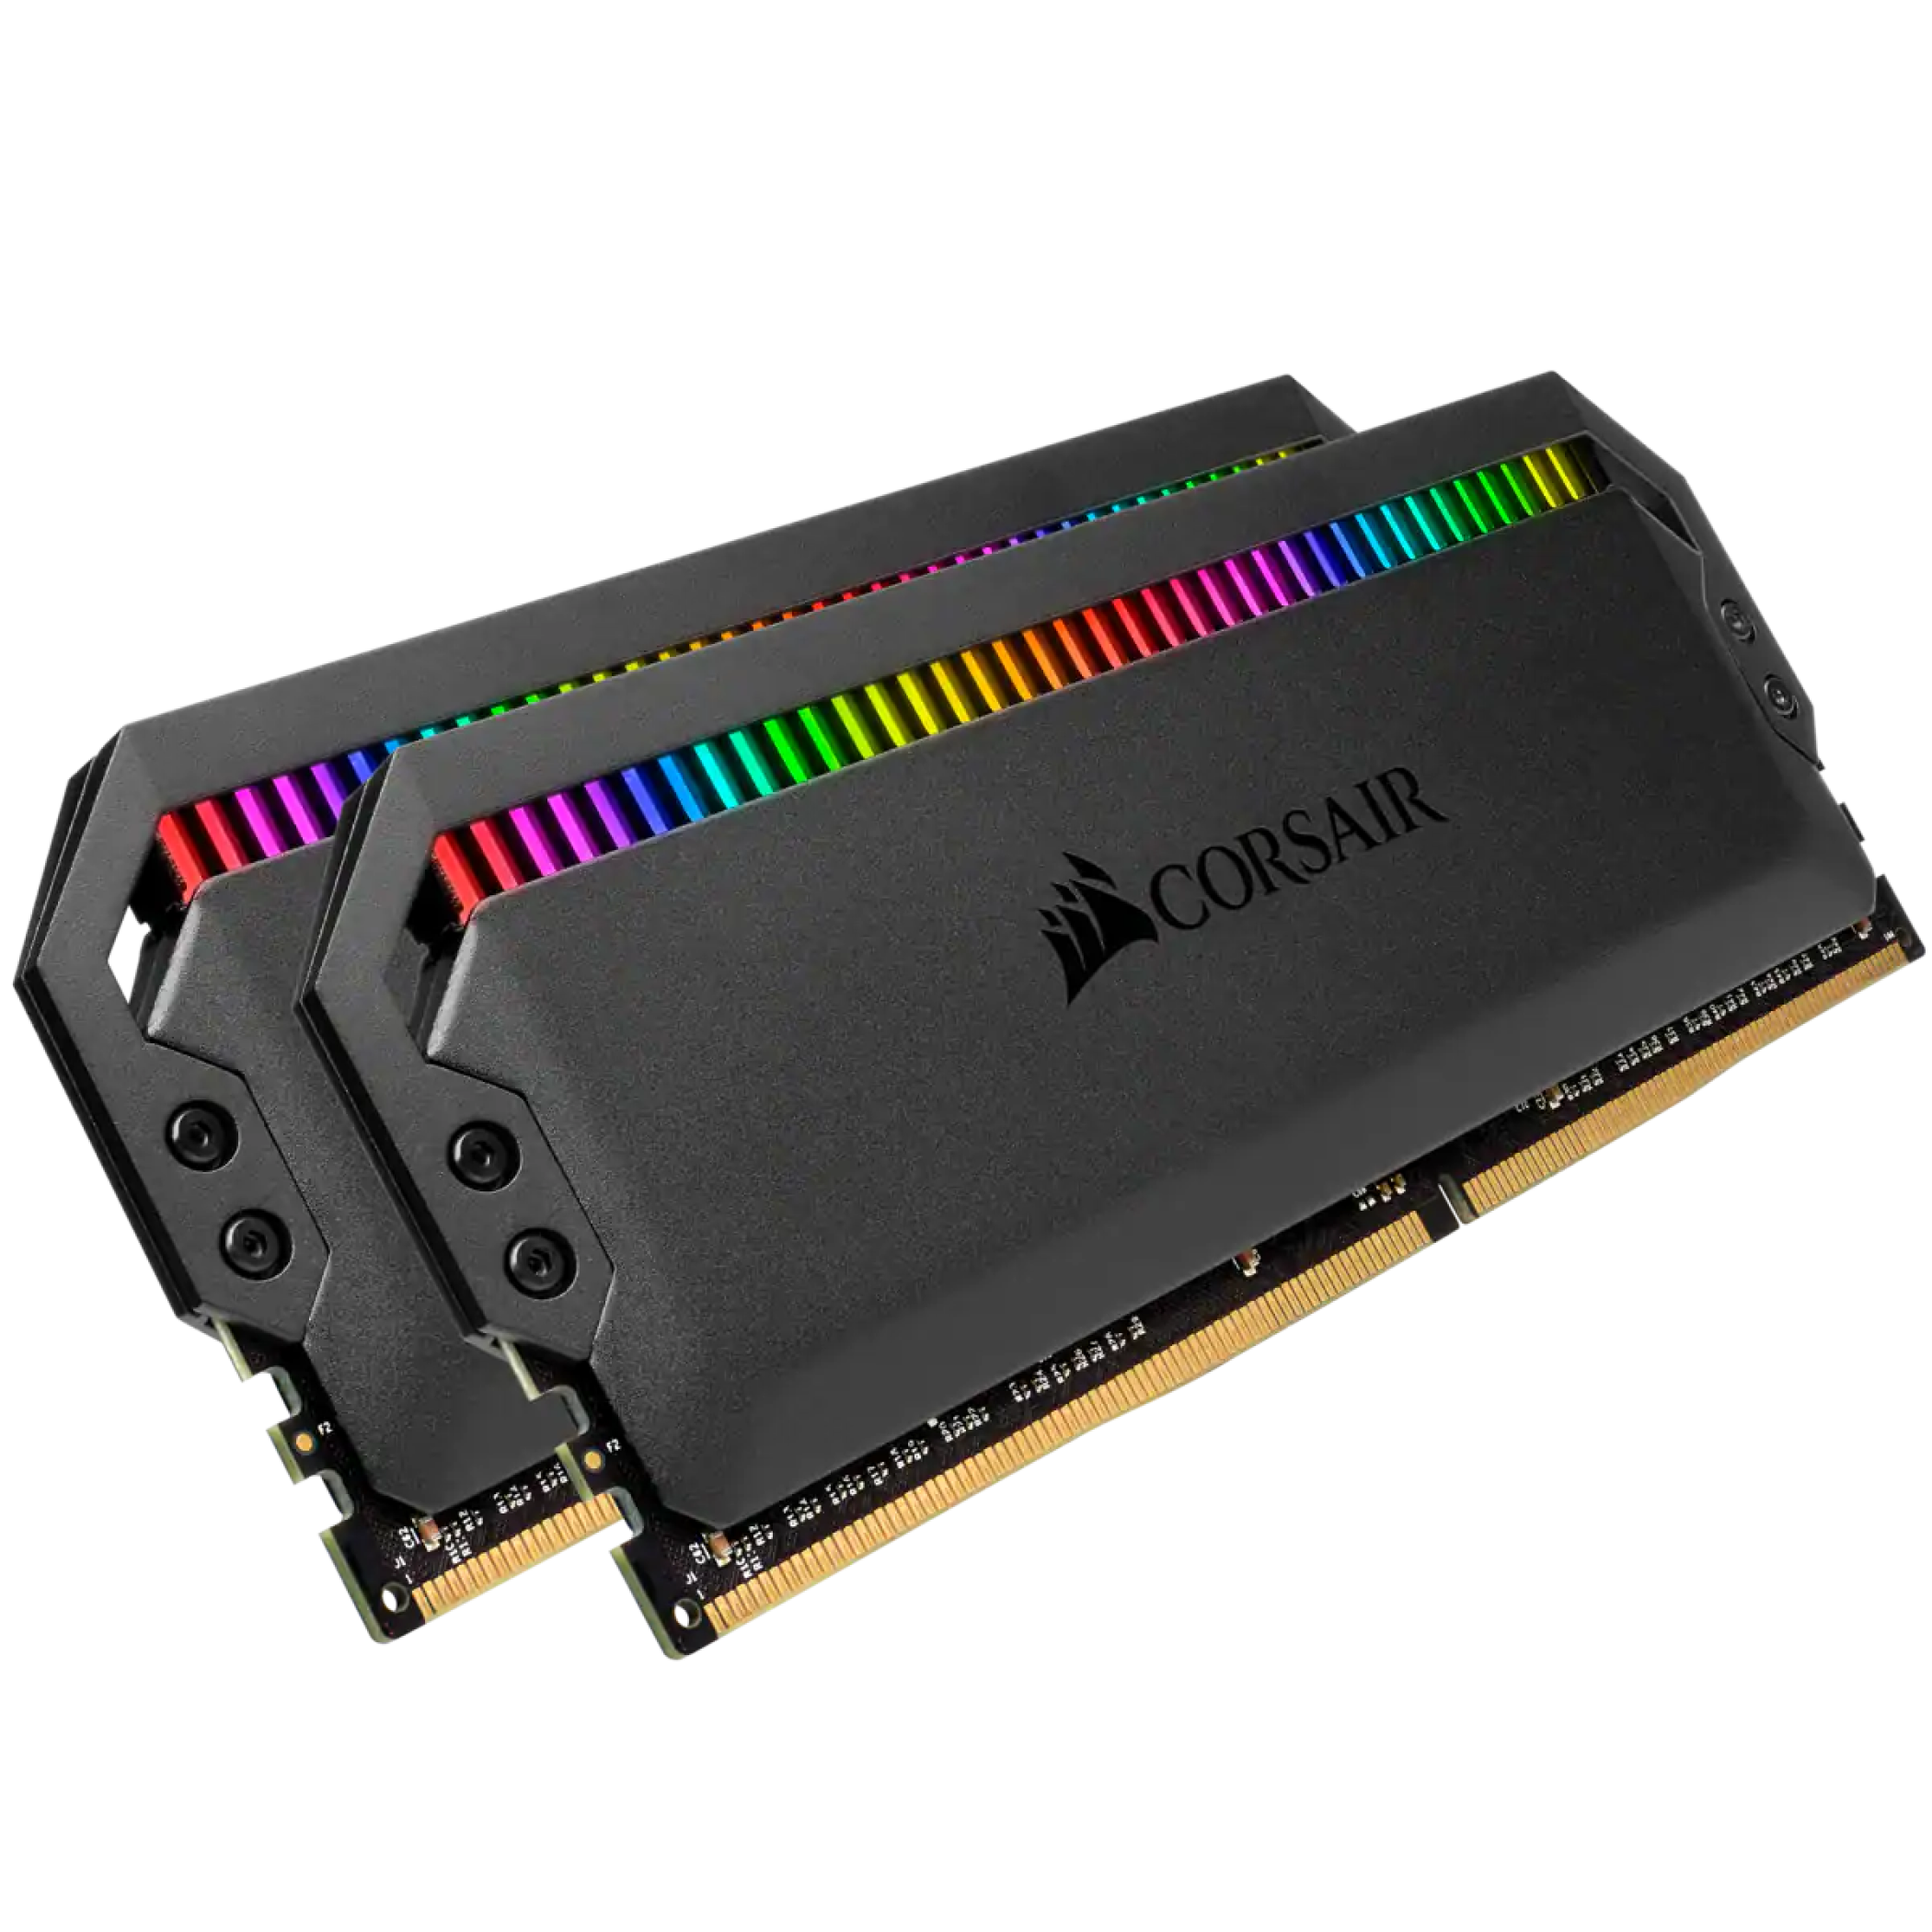 Corsair Dominator Platinum RGB RAM.